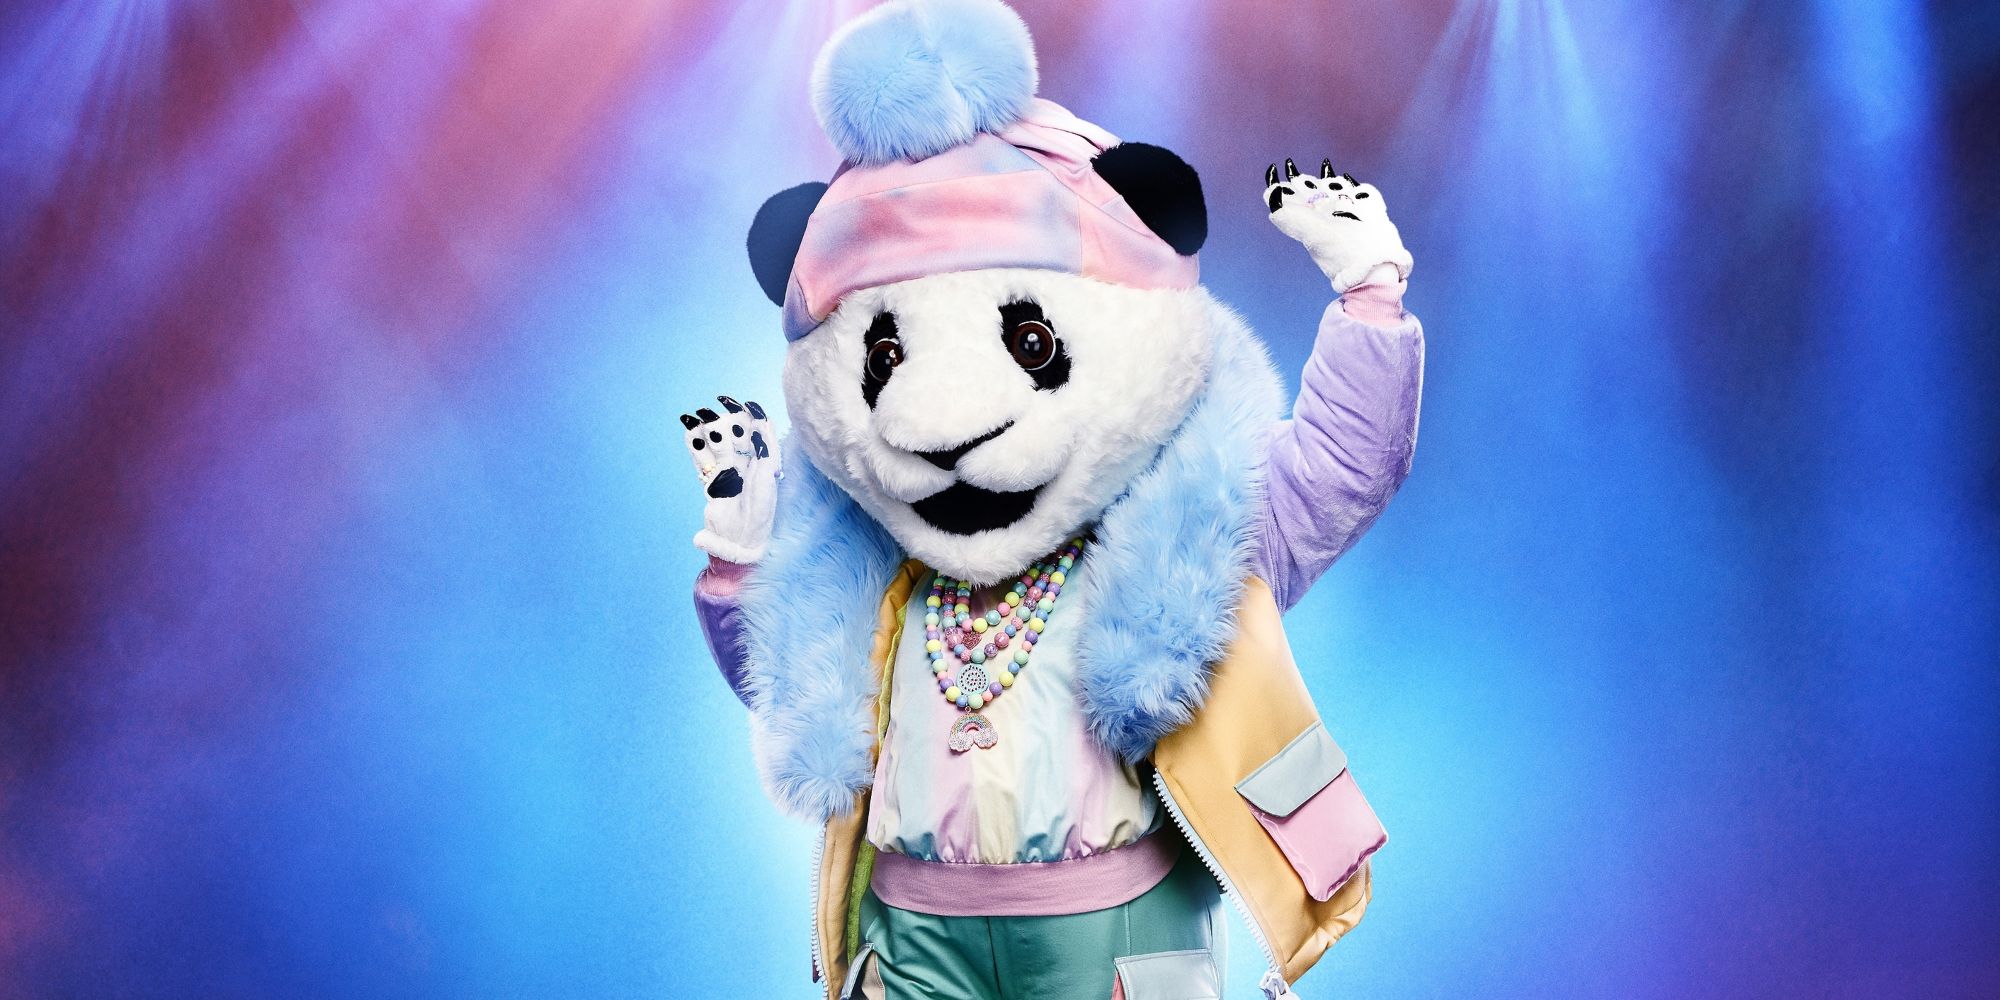 The Panda Masked Singer